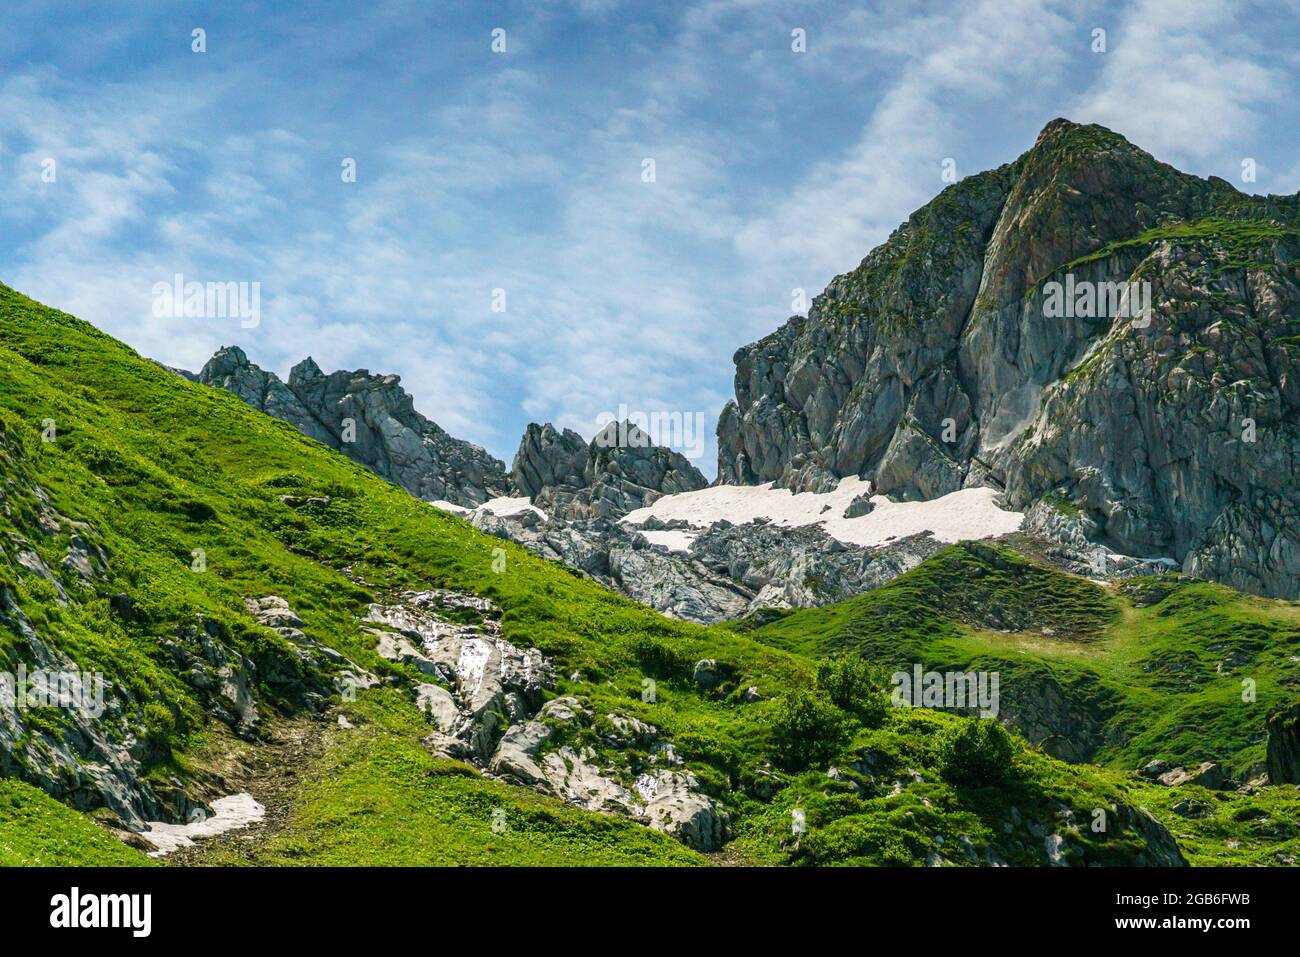 alpine Weiden an steilen Berghängen, mit Steinen und Blumen übersäht. Bergtal mit Wiesen und schroffen Felswänden. Klesenzaalpe, Grosswalsertal Foto Stock